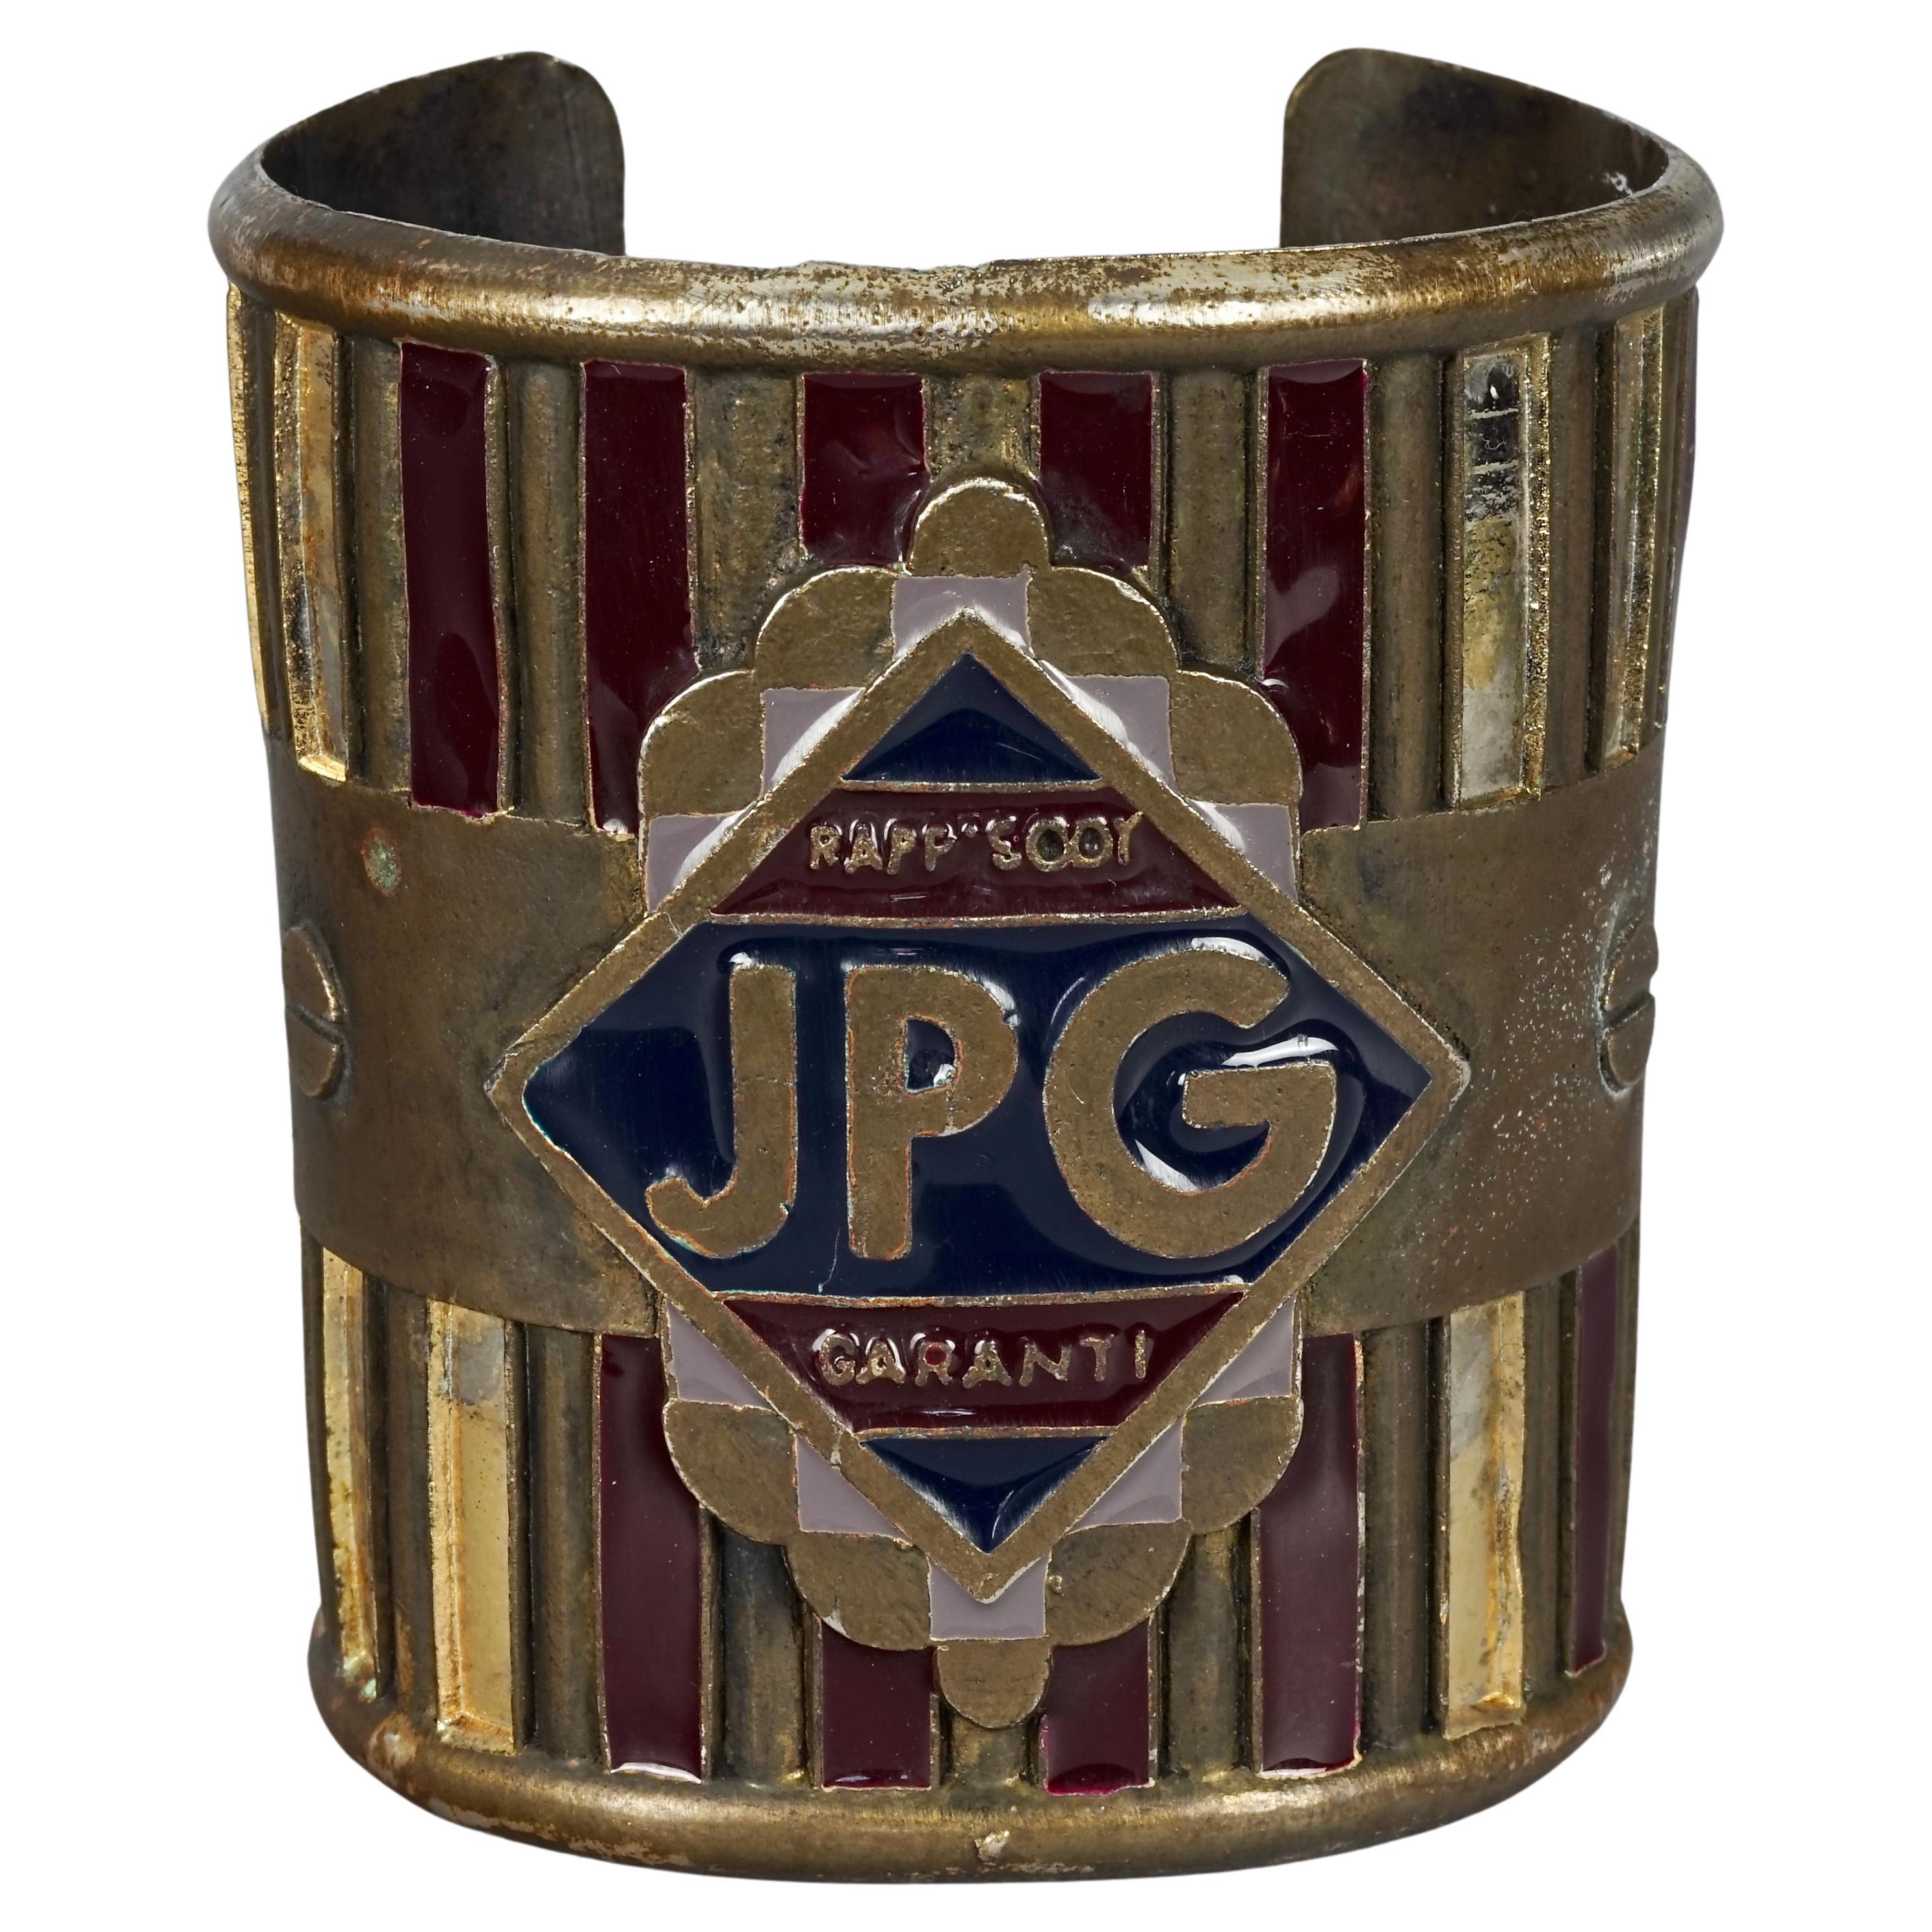 Vintage JEAN PAUL GAULTIER Rapsody Garanti Enamel Rustic Cuff Bracelet For Sale